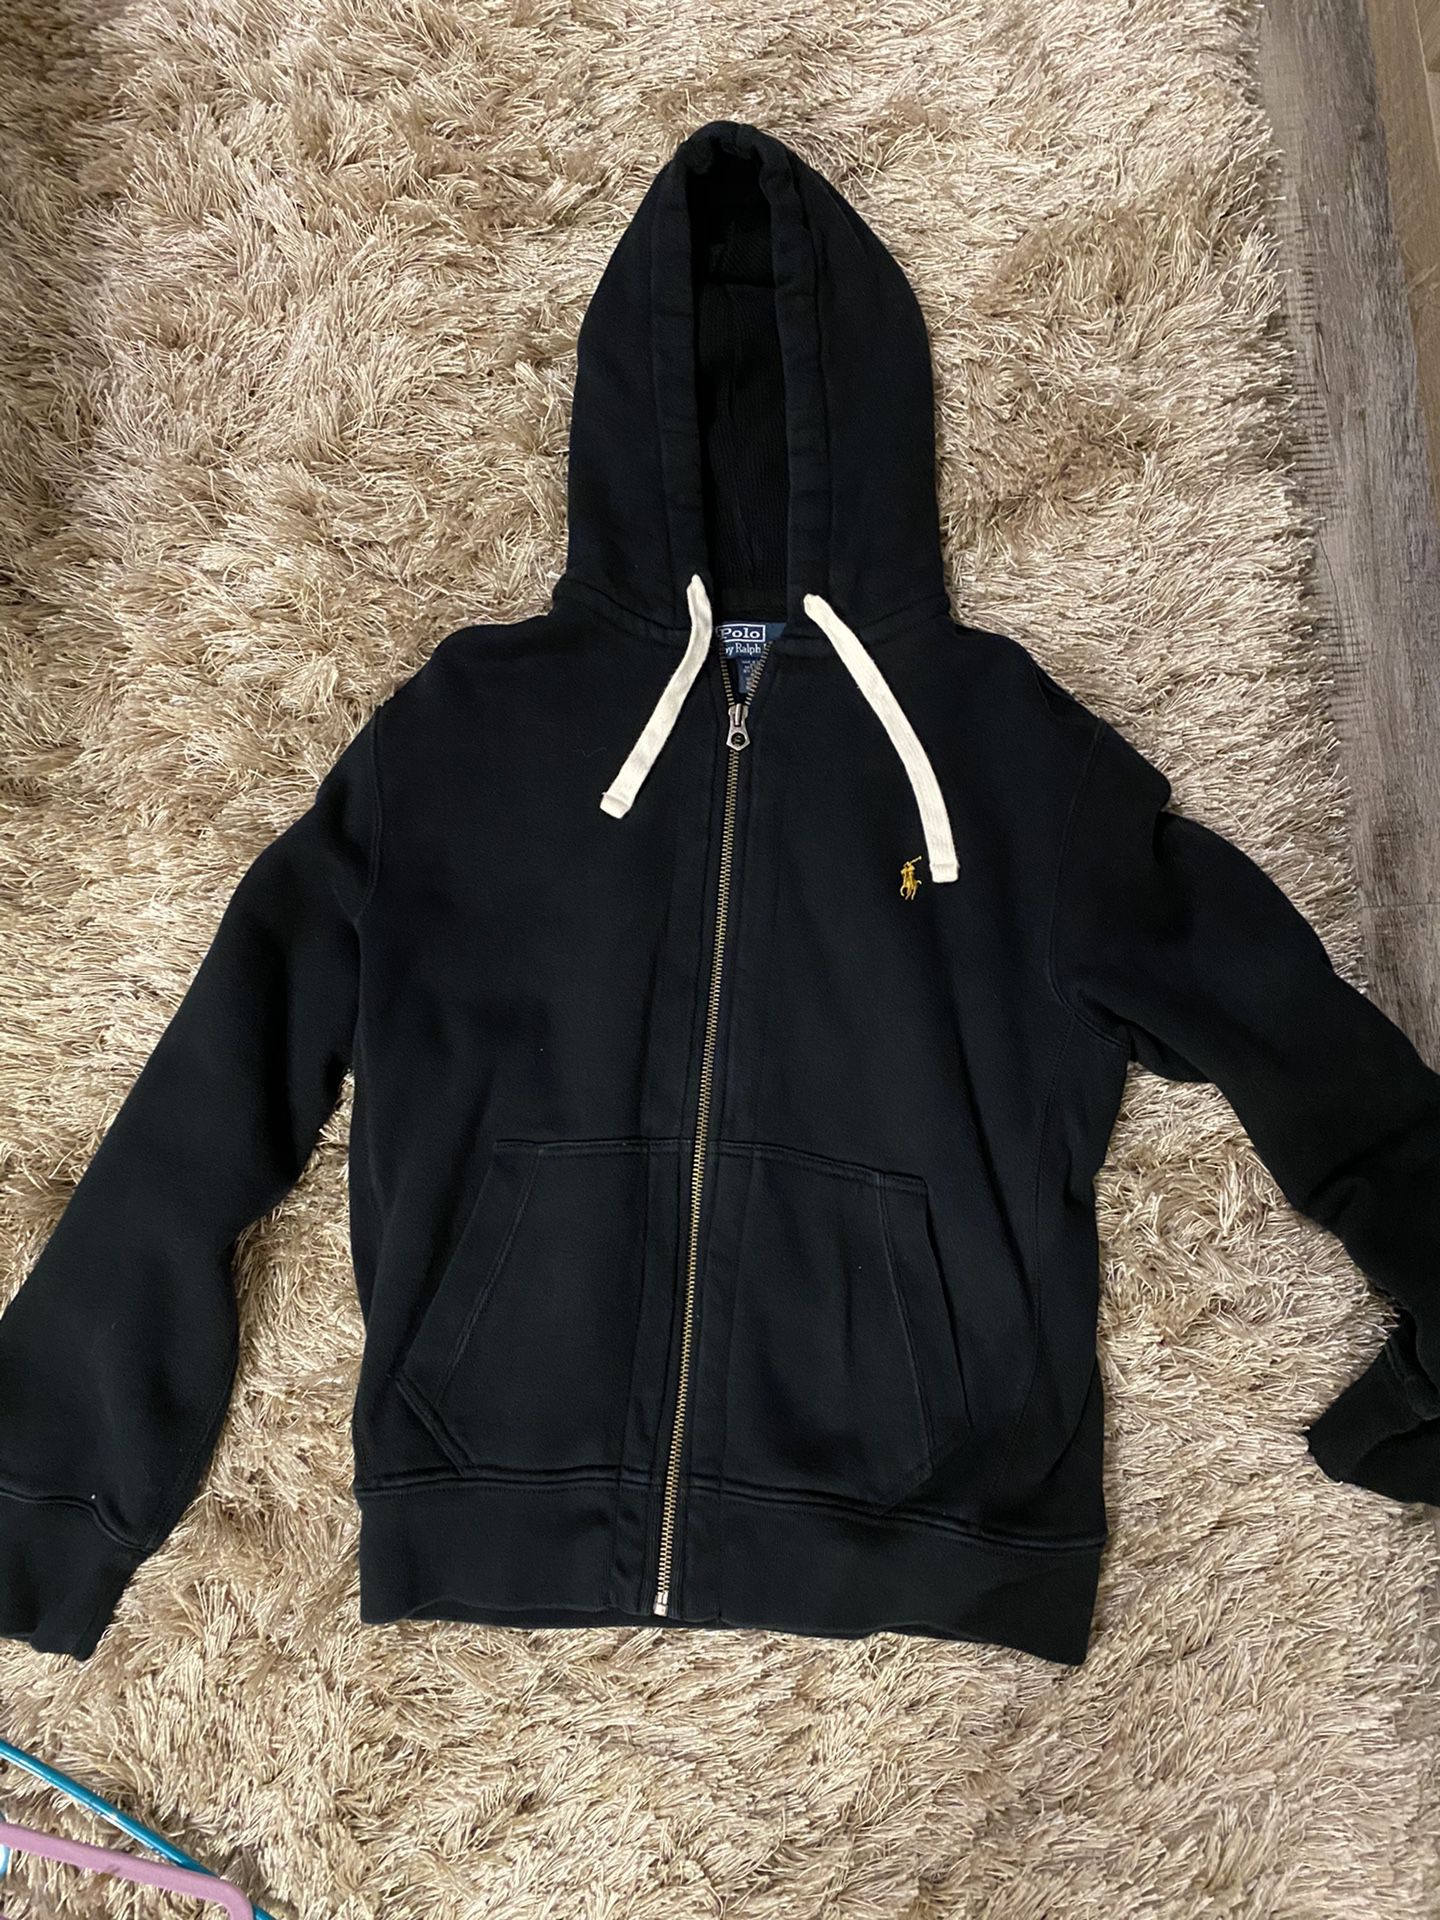 Black Ralph Lauren Polo Zip-Up Hoodie/Jacket, Size M, has UCF logo